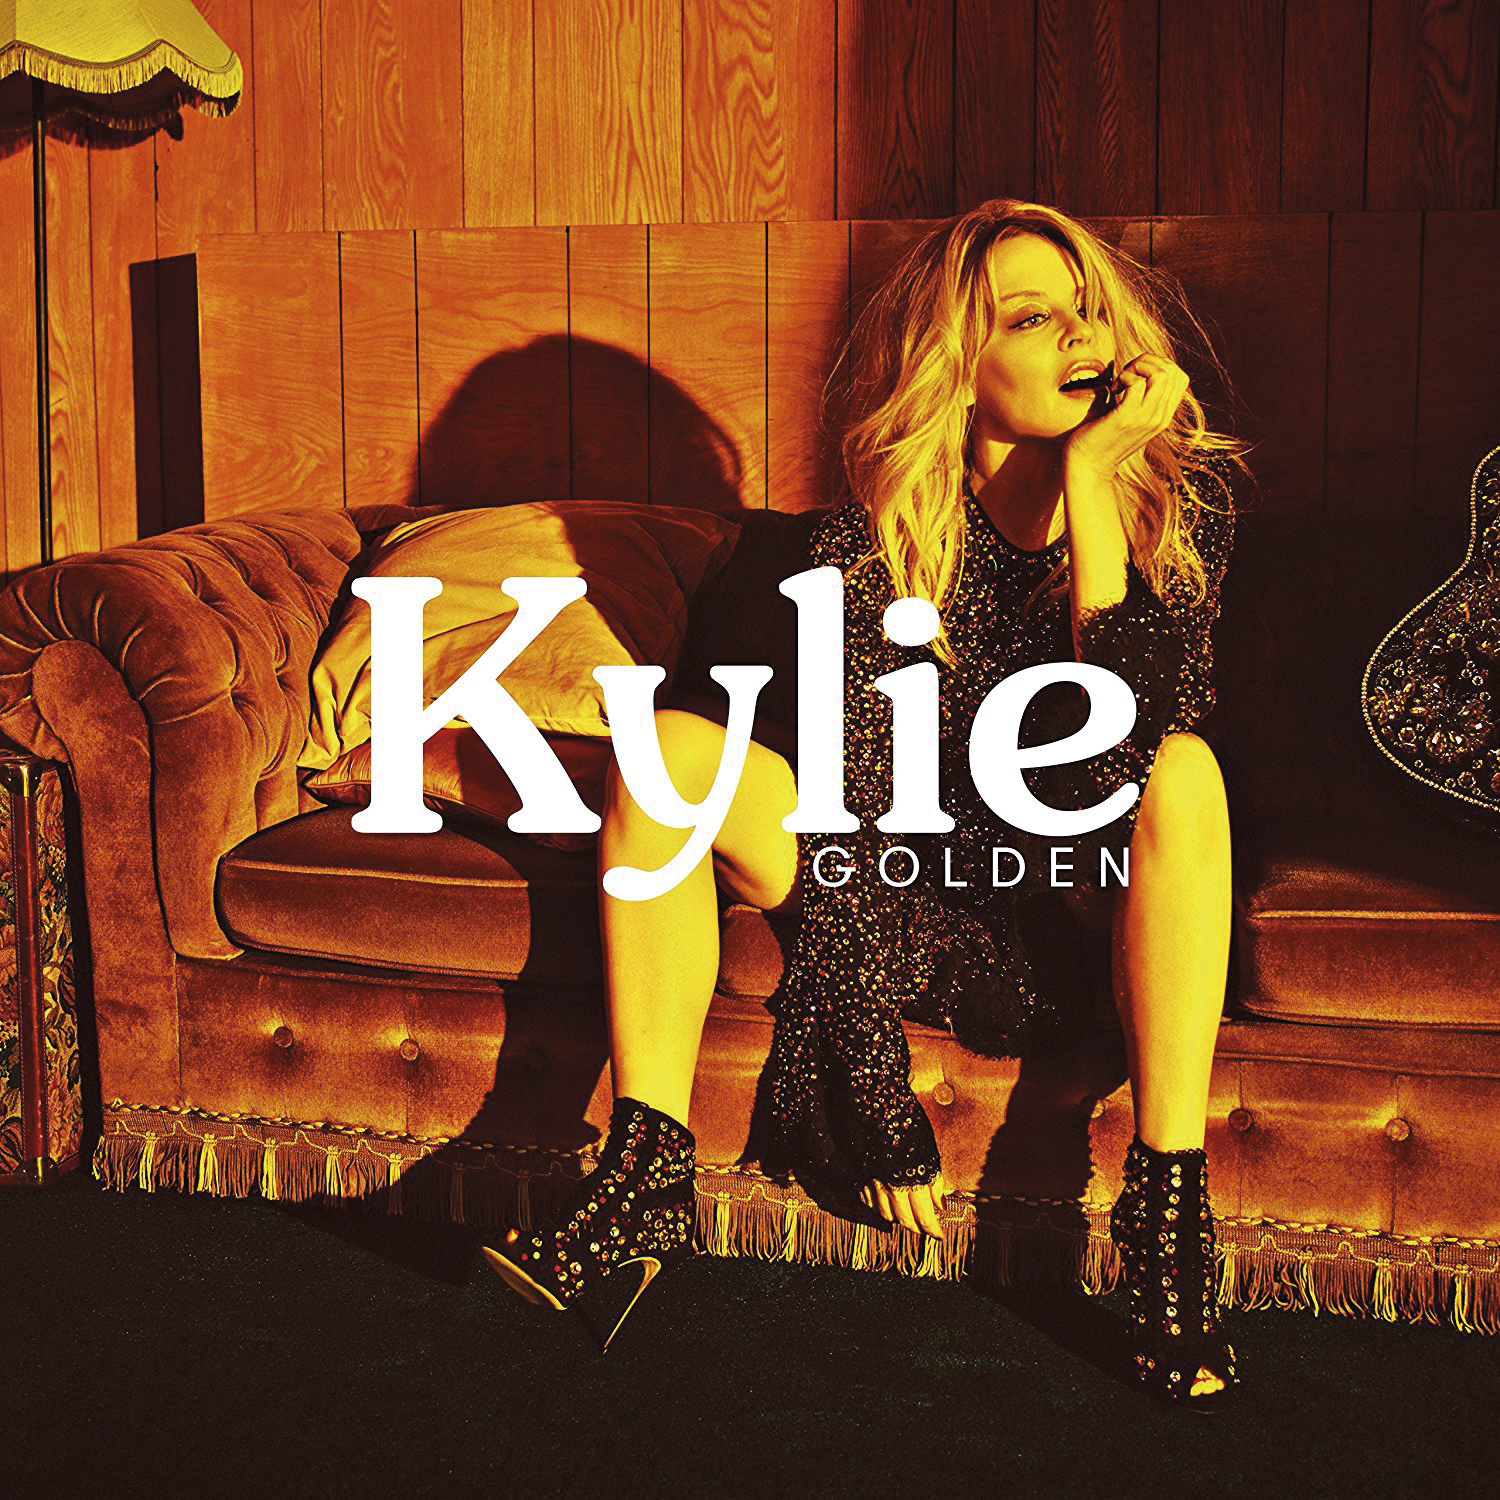 De Kylie Minogue a Toni Braxton: los discos del momento, a examen